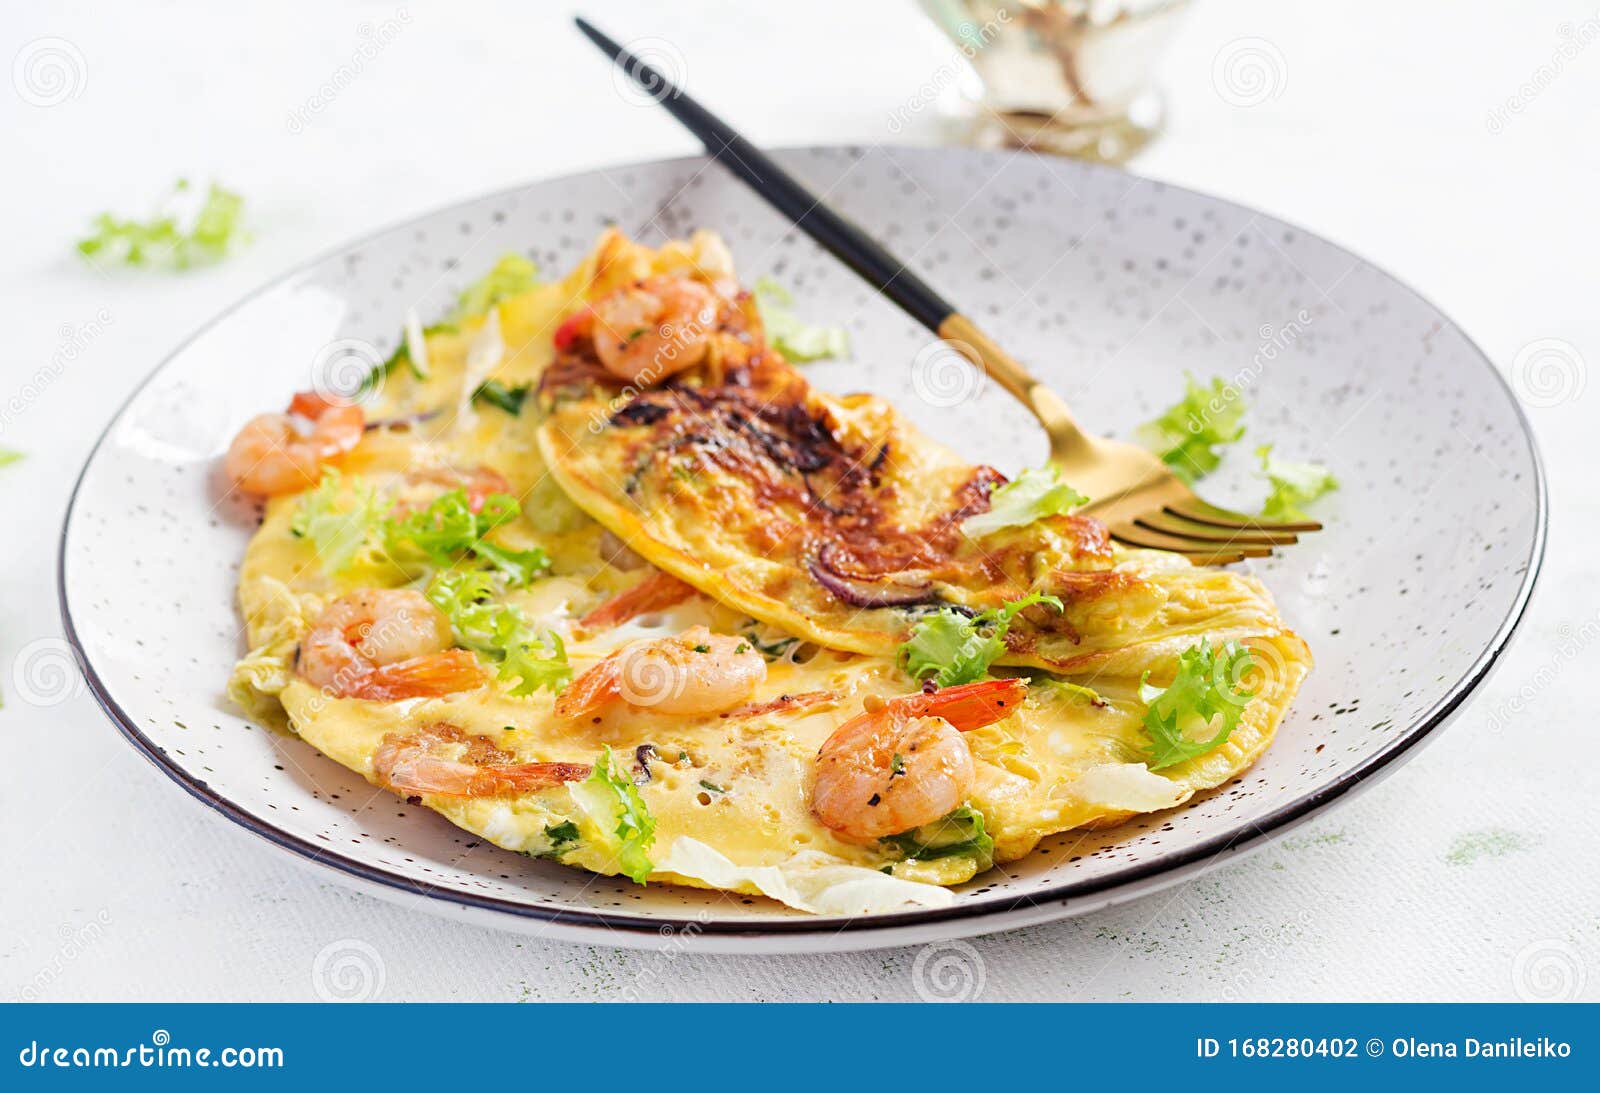 shrimp on paleo diet